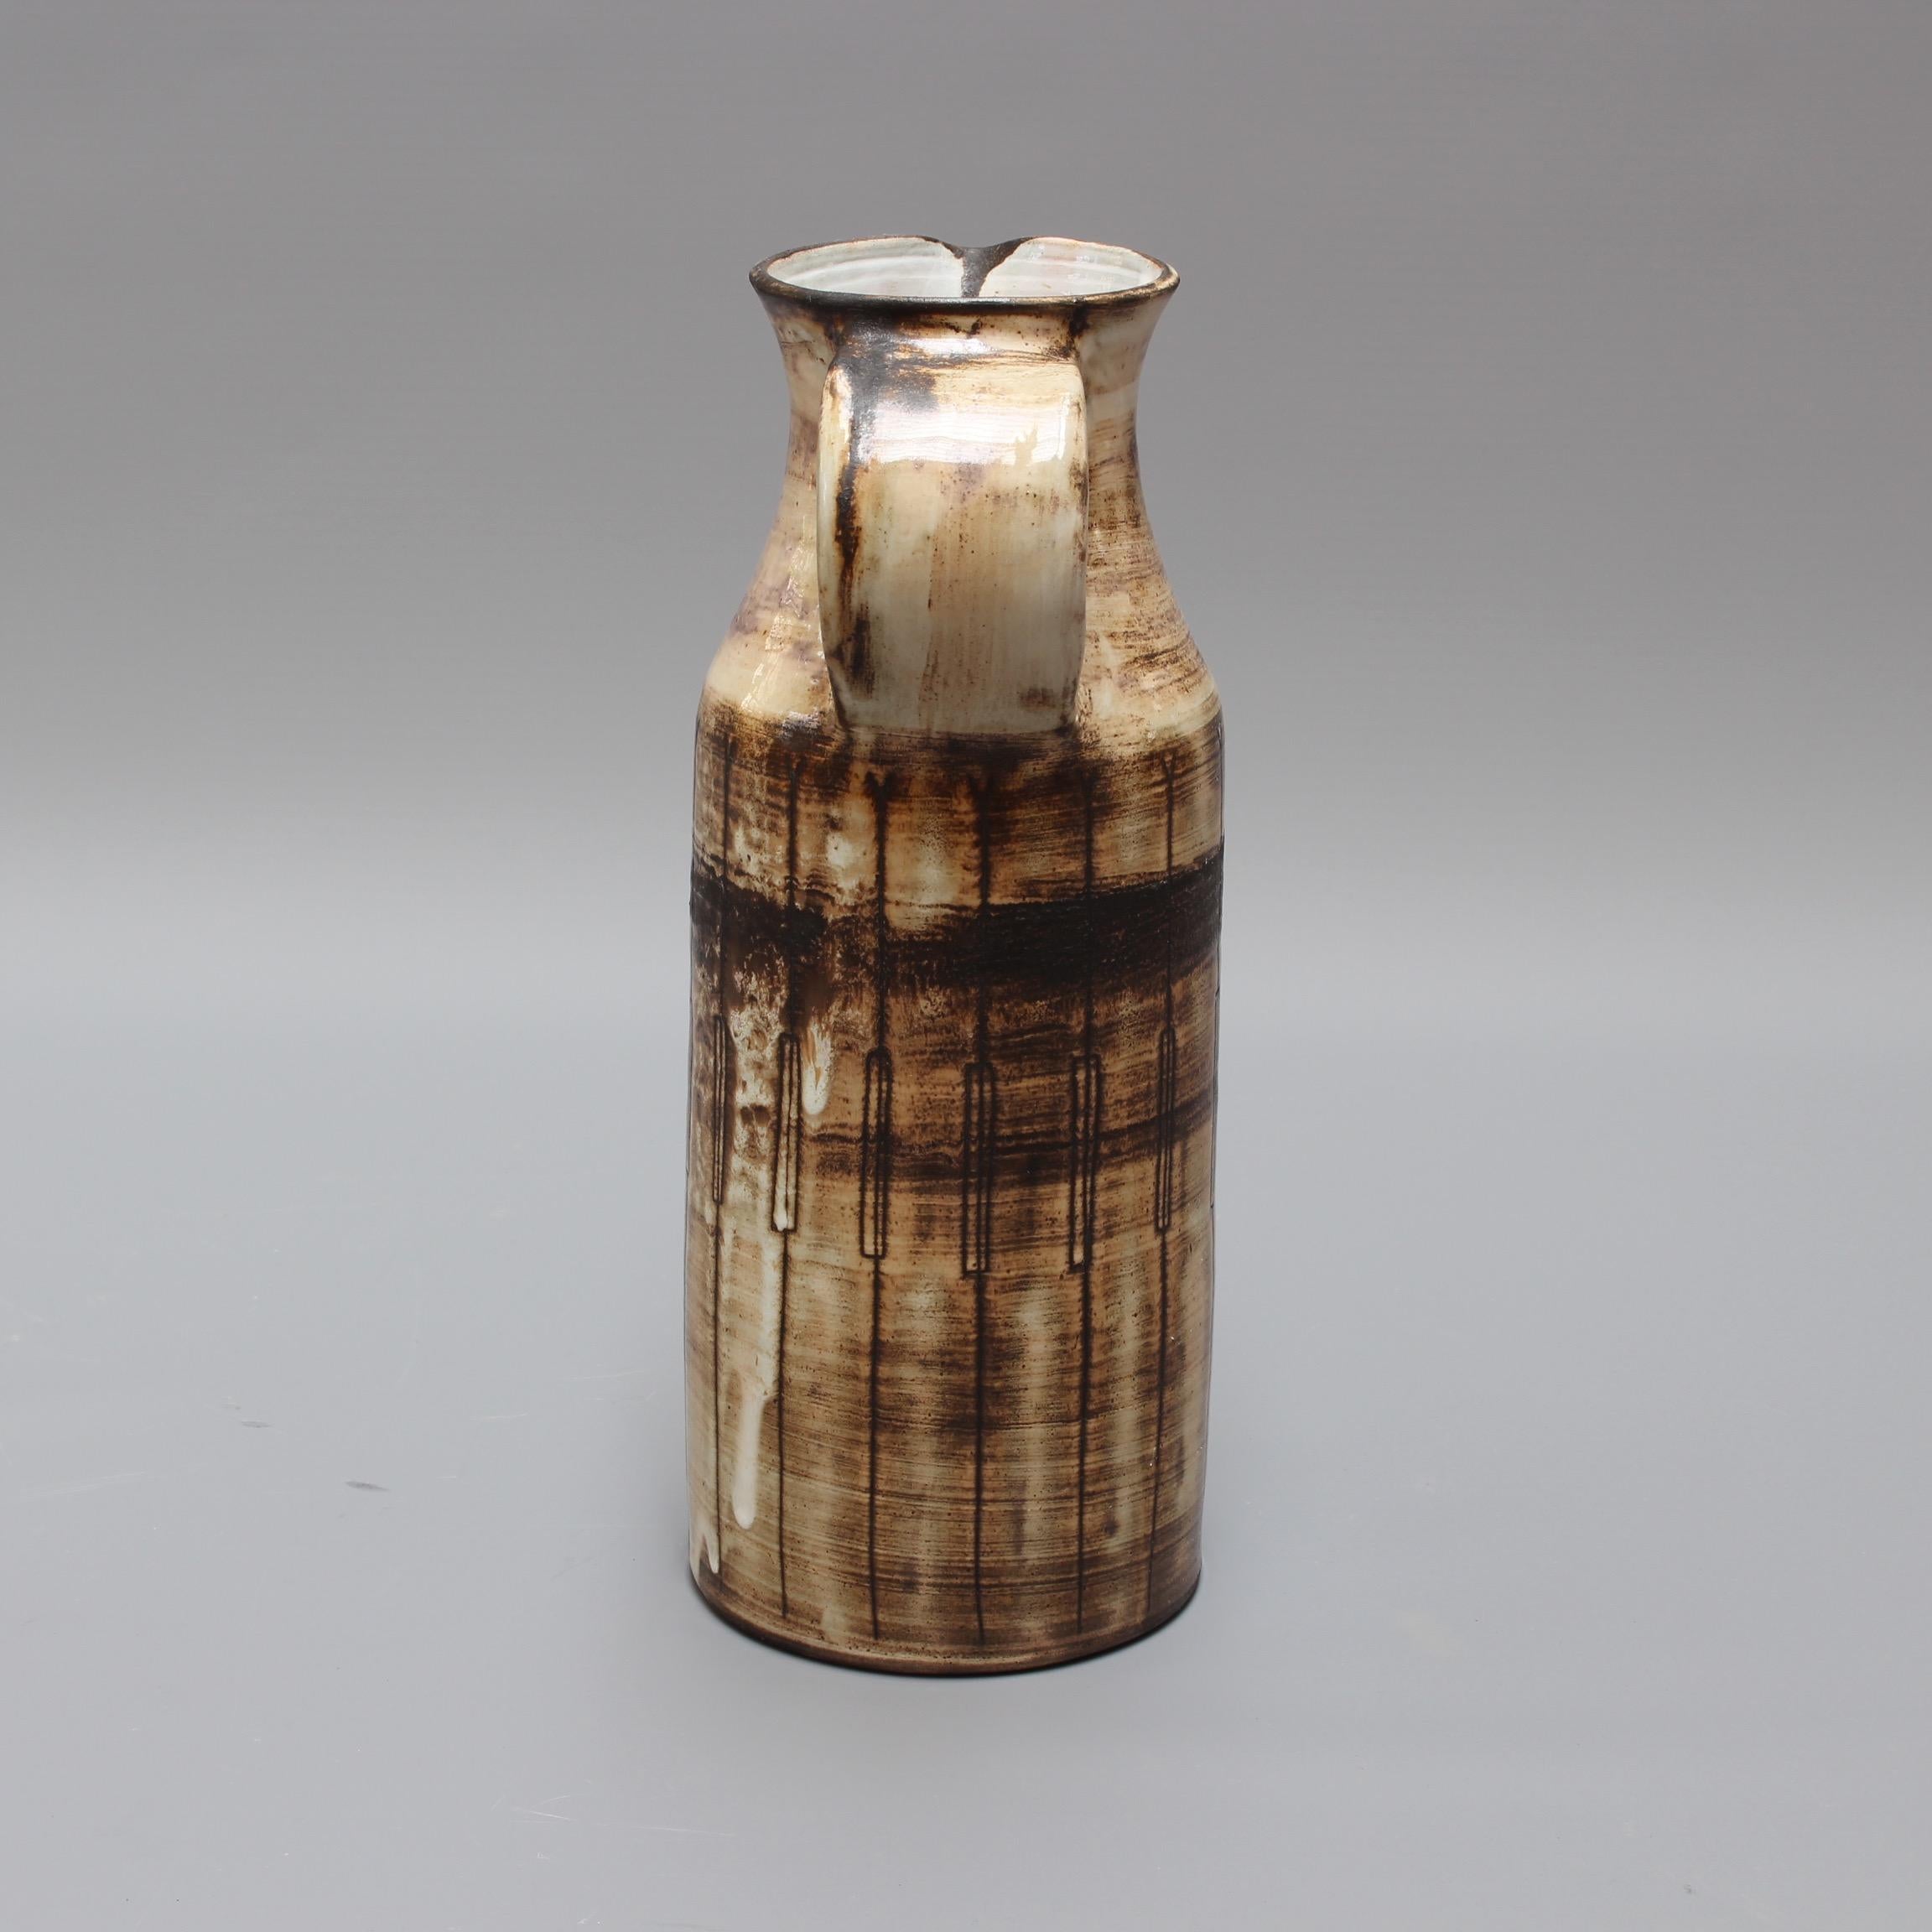 Keramikvase aus der Mitte des Jahrhunderts, um 1960 von Jacques Pouchain (1925-2005). Diese Vase in Form eines Milchkännchens mit der für Pouchain typischen wolkigen Glasur ist stilvoll, charaktervoll und substanziell. Pouchain fügte vertikale